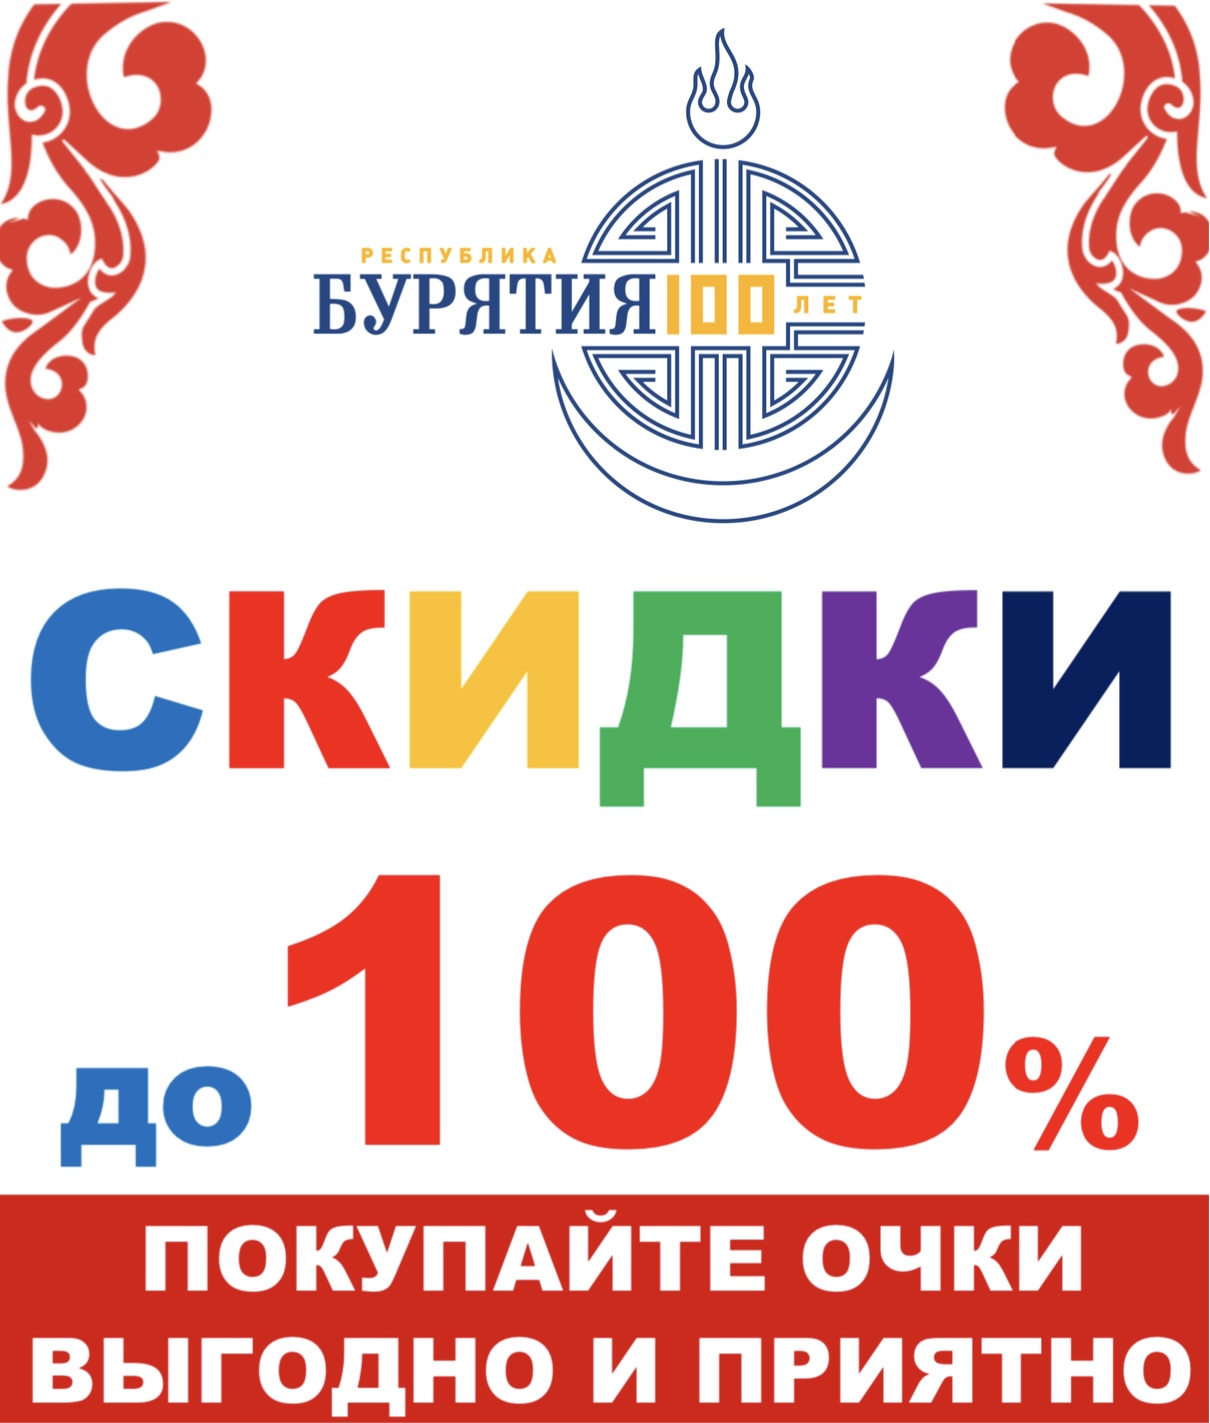 В «Оптике Сэсэг» праздничная акция «СКИДКИ до 100%!»